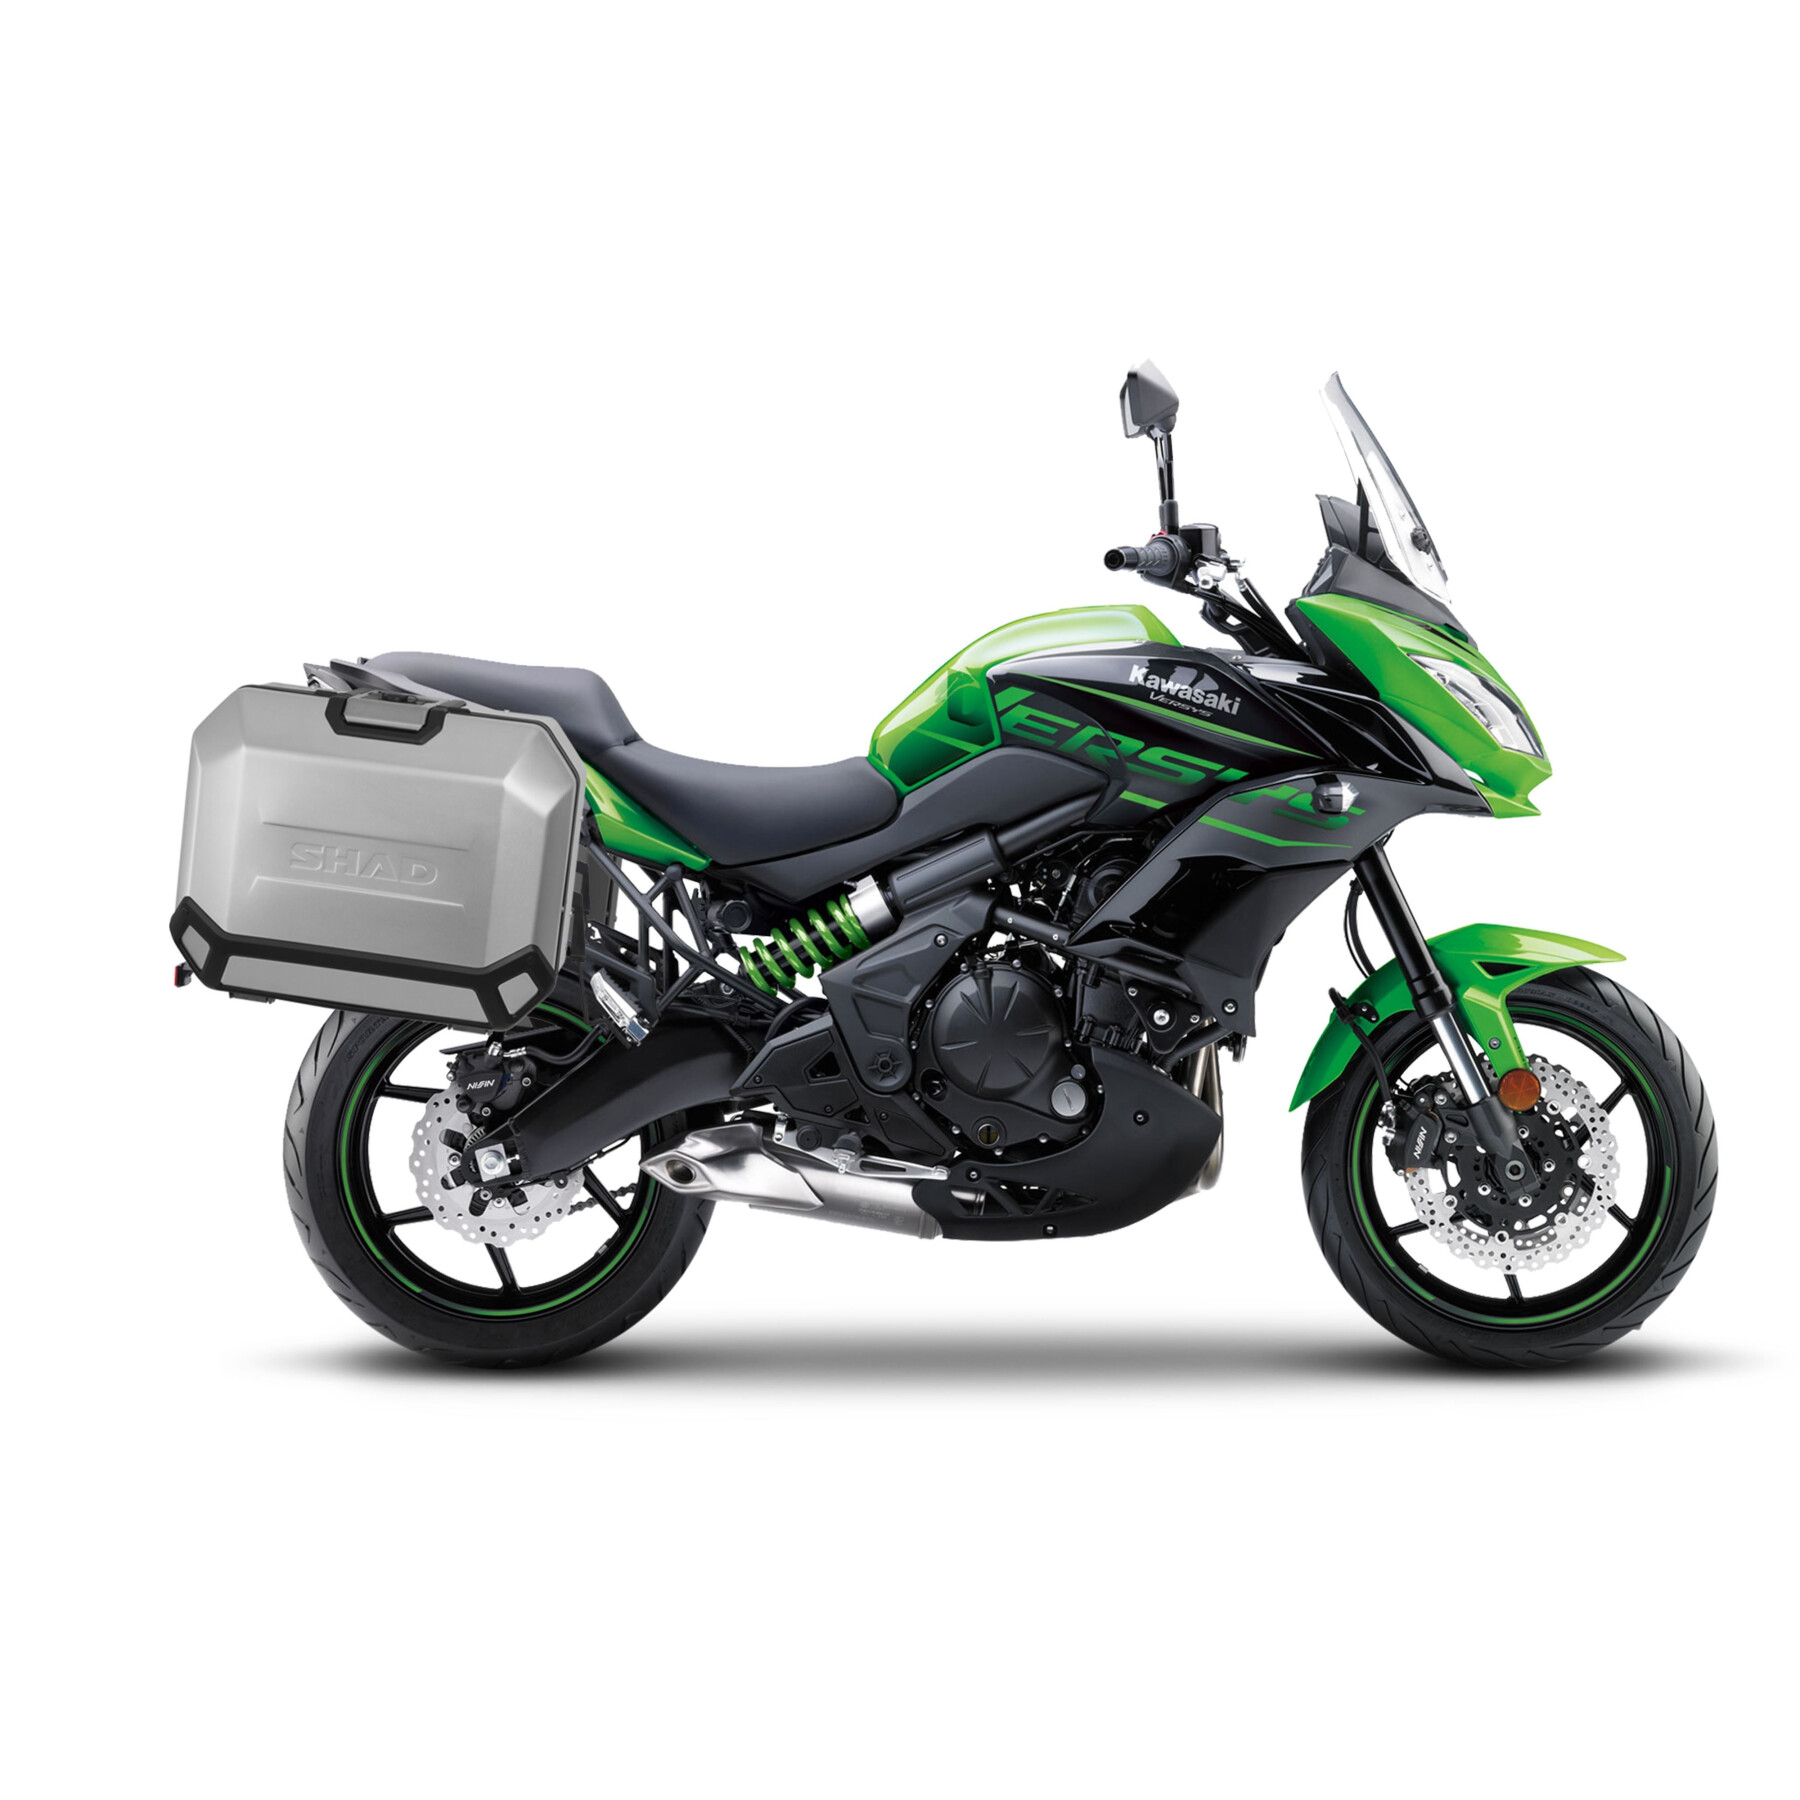 Kit de fijación de la maleta lateral de la moto Shad 4P Kawasaki Versys 650 '15-22